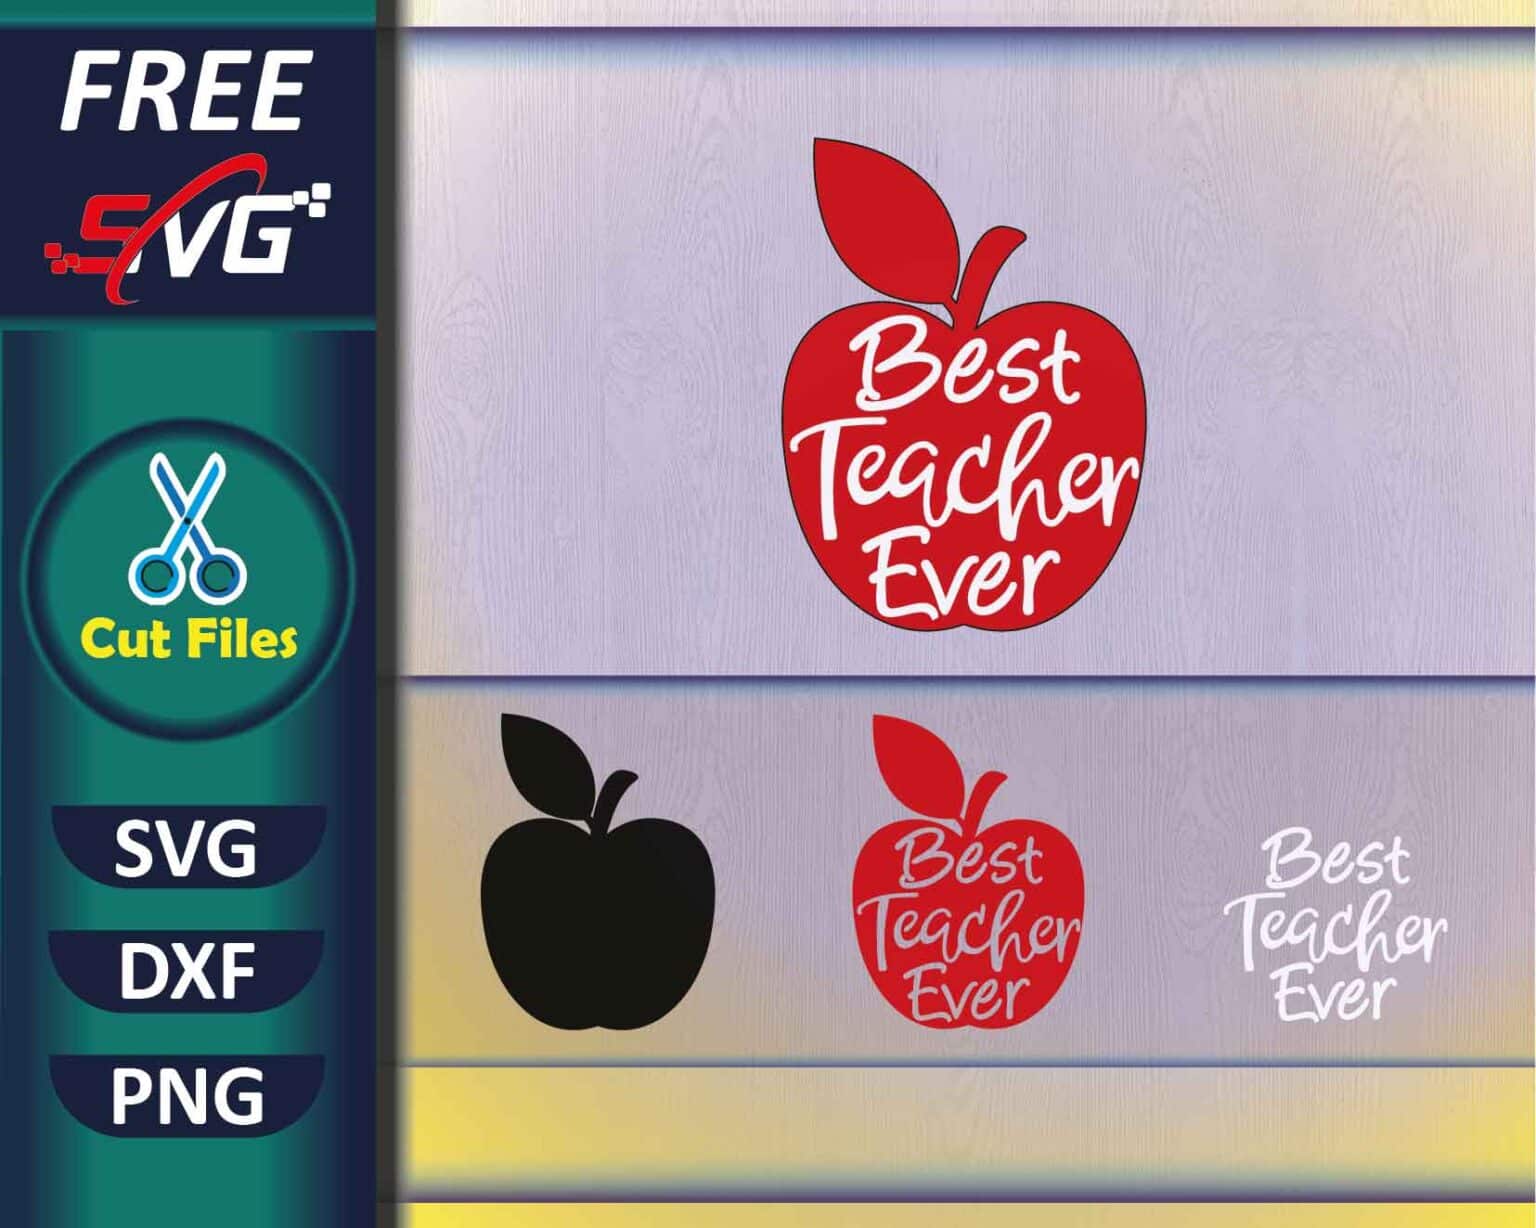 Teacher SVG Free, Best Teacher Ever - Free SVG Cut Files